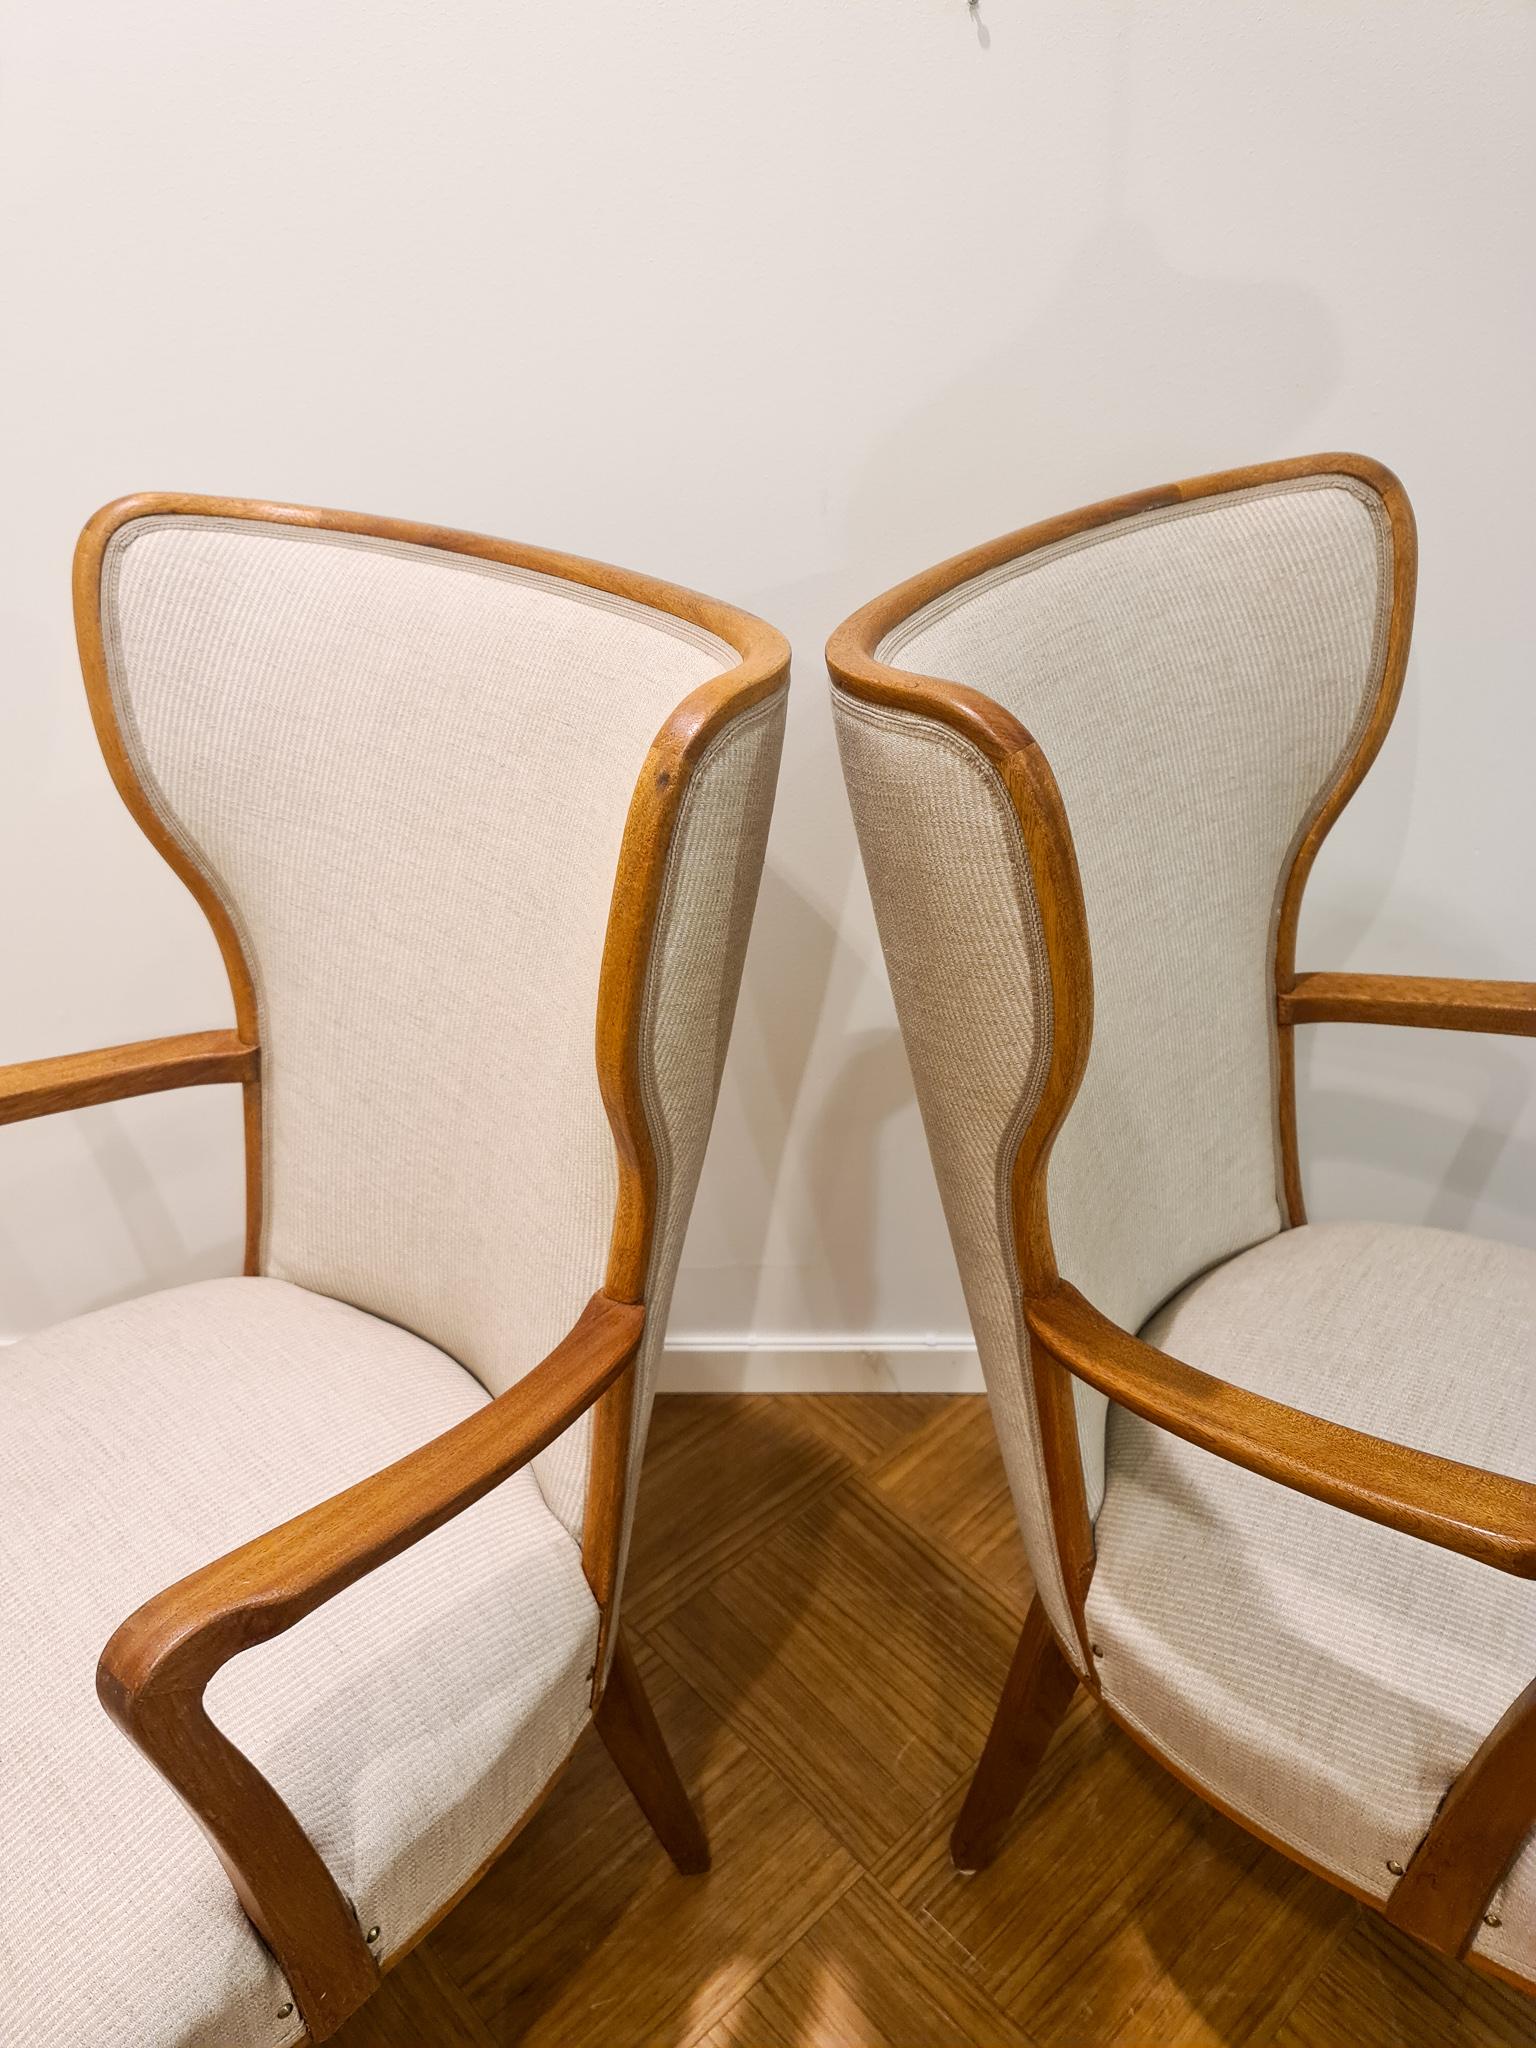 Swedish Art Deco Lounge Chairs Svenska Kontorsmöbler, Sweden, 1940s For Sale